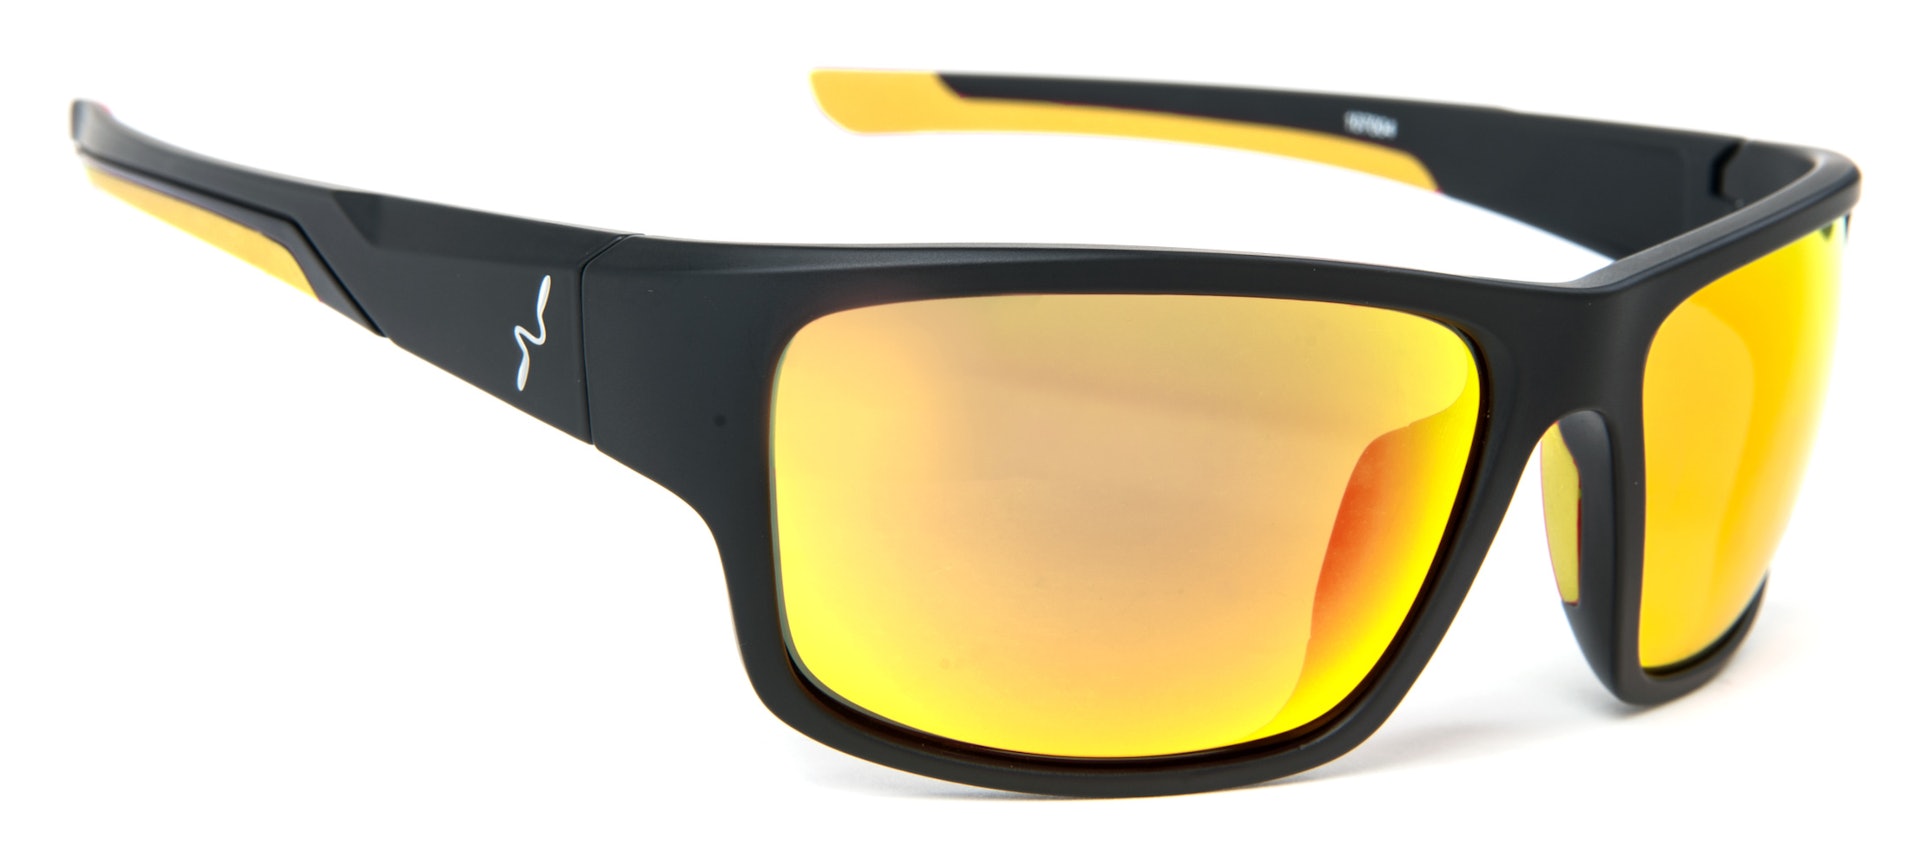 Experience Sunglasses - Yellow Lens (bilde 1 av 1)